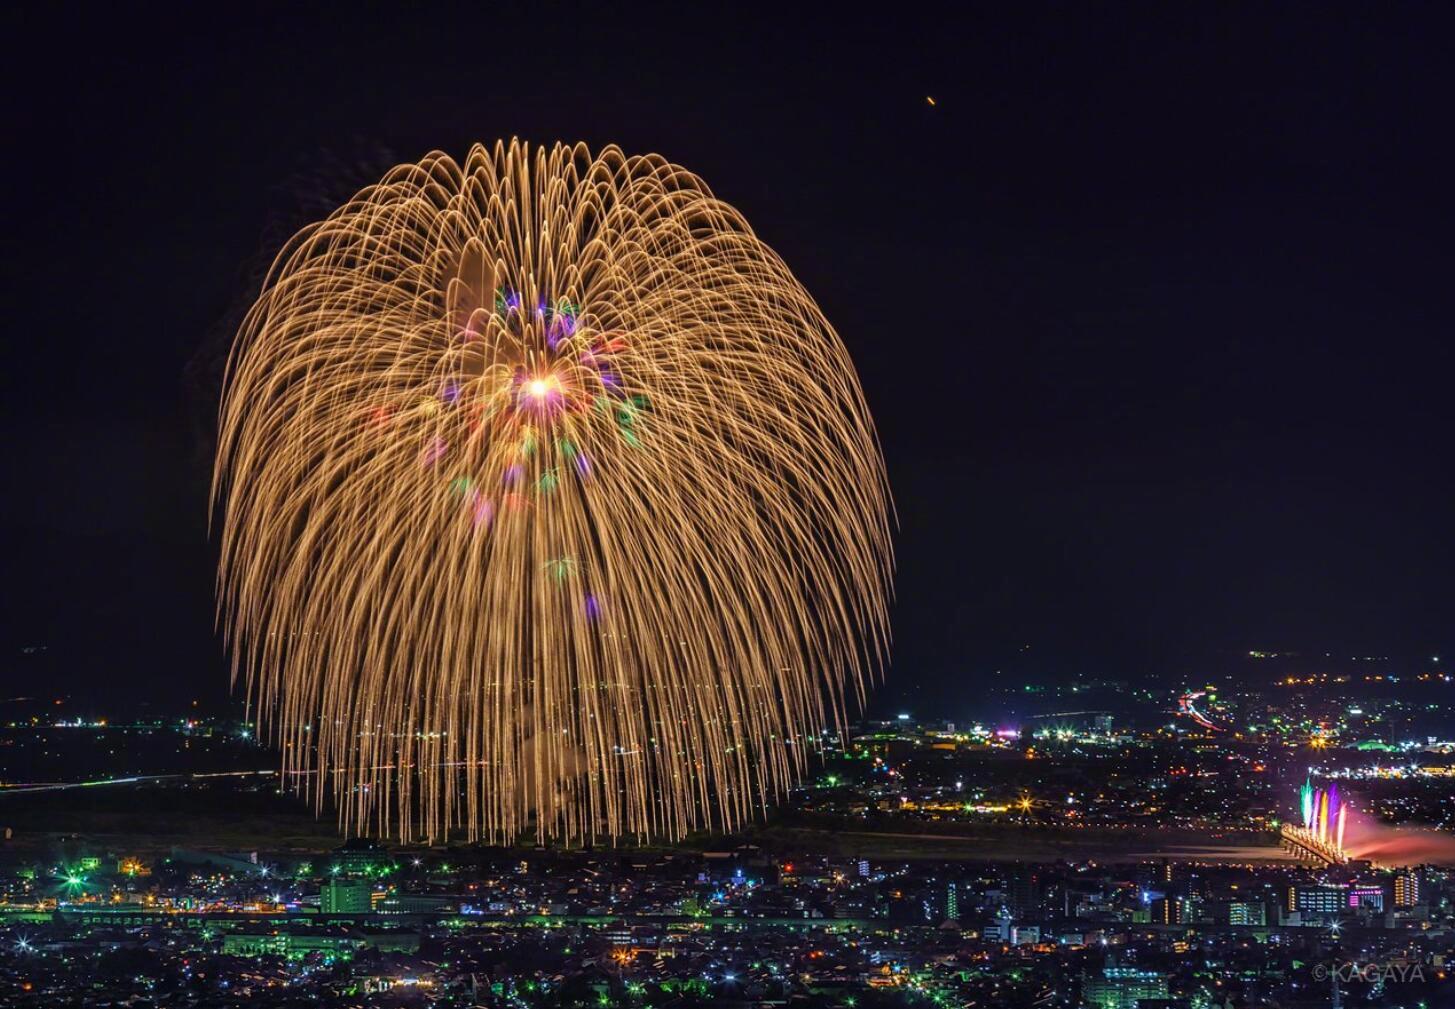 推上网友们记录下的日本长冈花火大会的盛景,夜空下烟花绽放